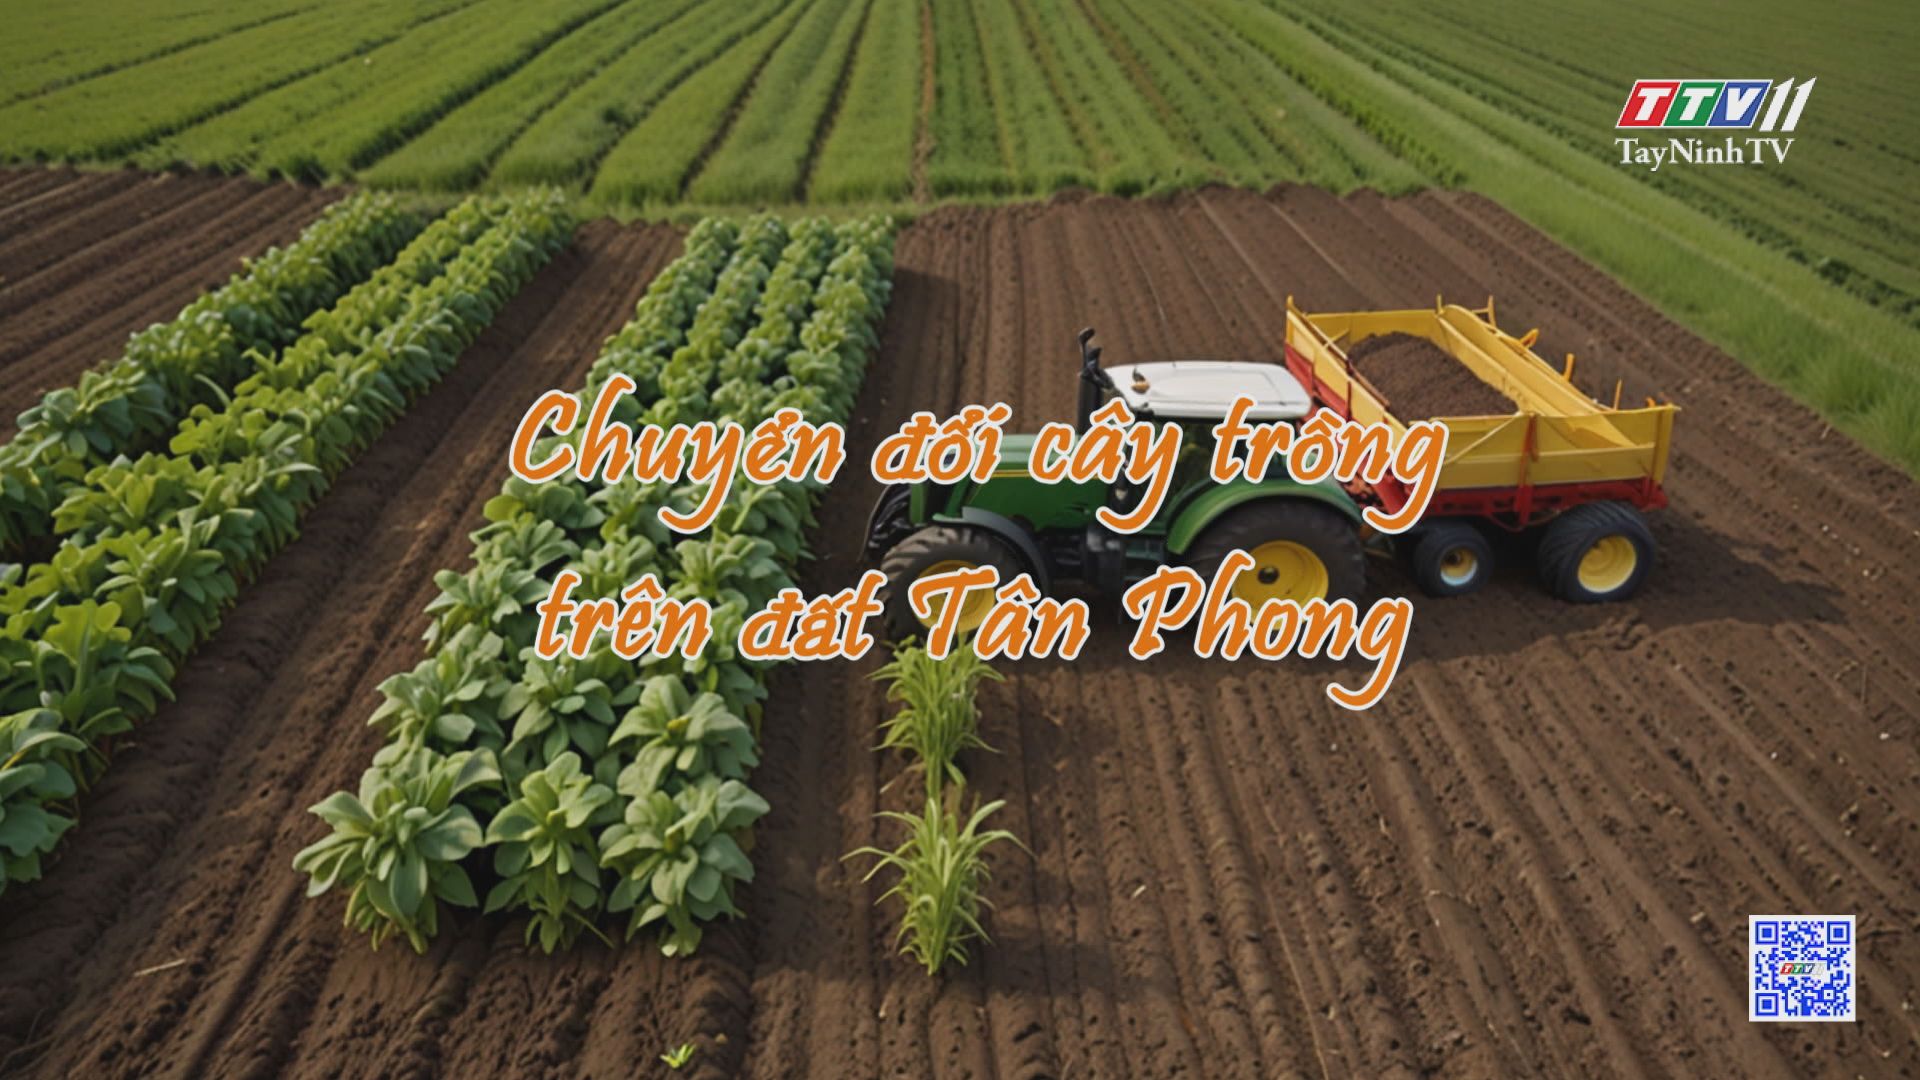 Chuyển đổi cây trồng trên đất Tân Phong | NÔNG NGHIỆP TÂY NINH | TayNinhTV